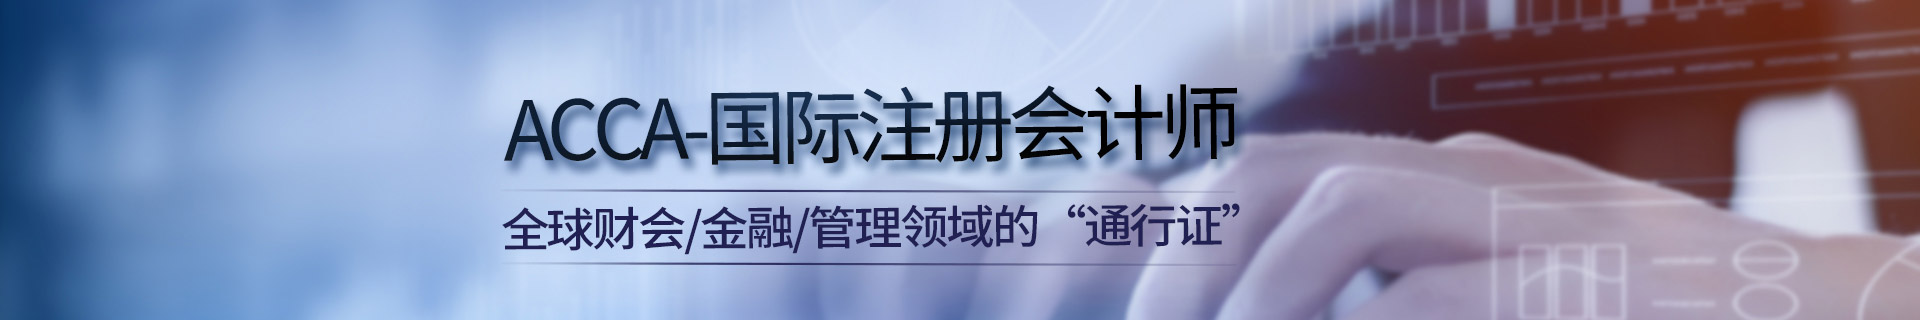 上海虹口区金程教育机构